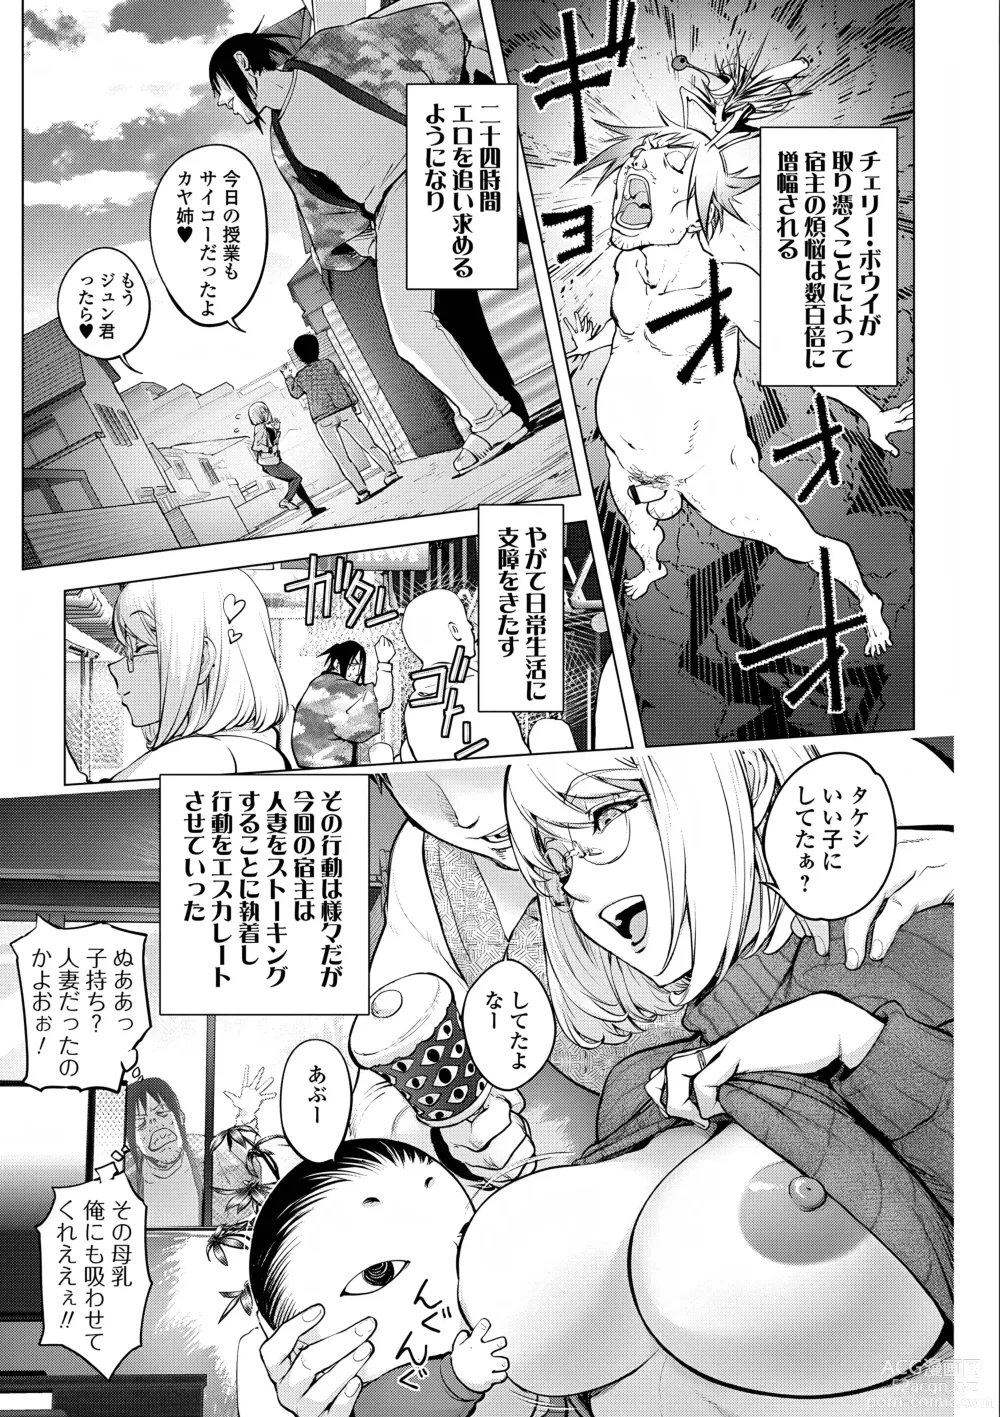 Page 5 of manga Kaya-Nee VS Cherry Boy